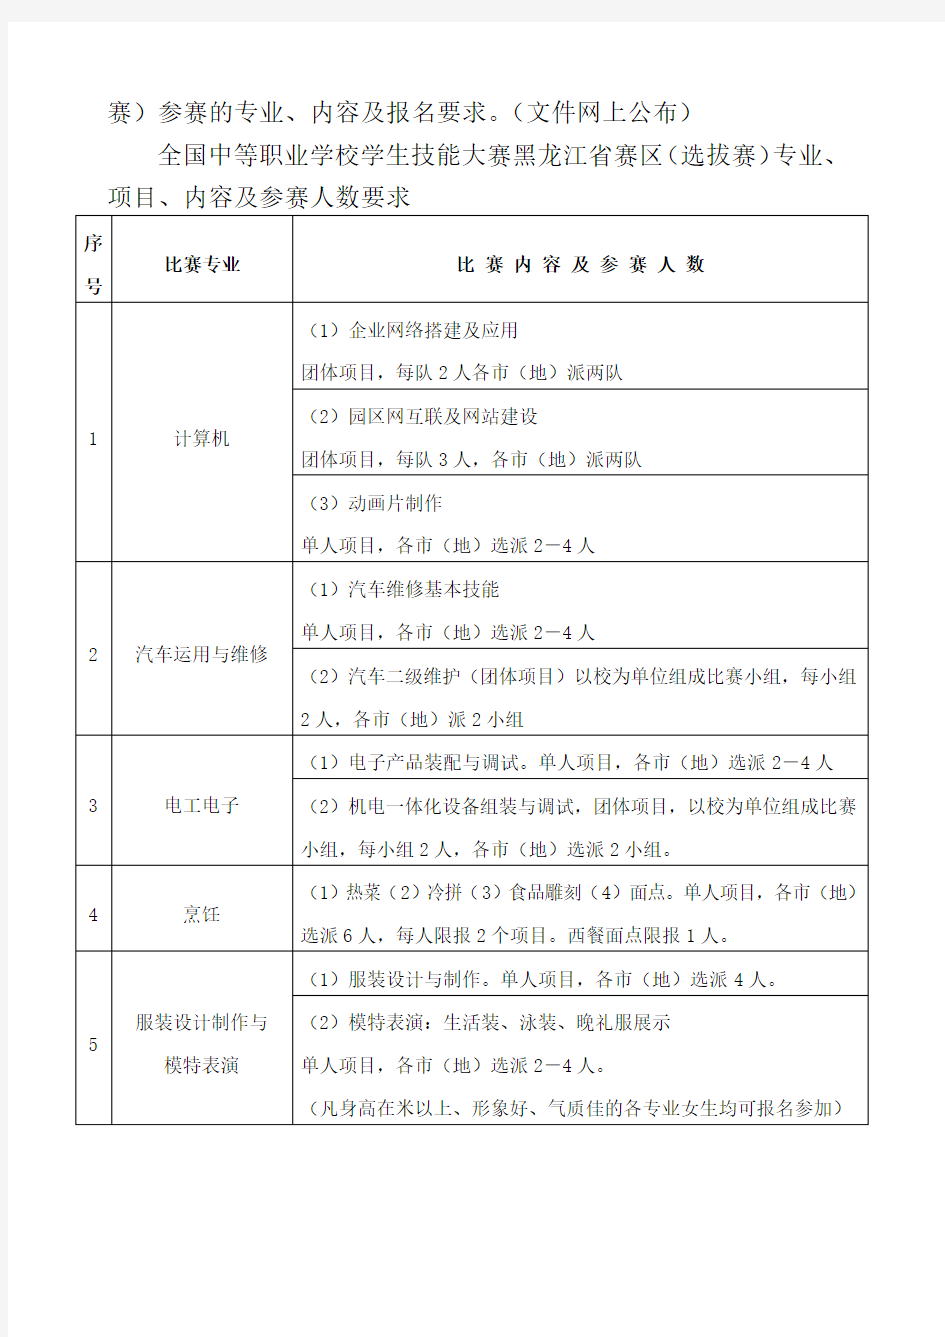 黑龙江省中等职业学校学生职业技能大赛工作流程